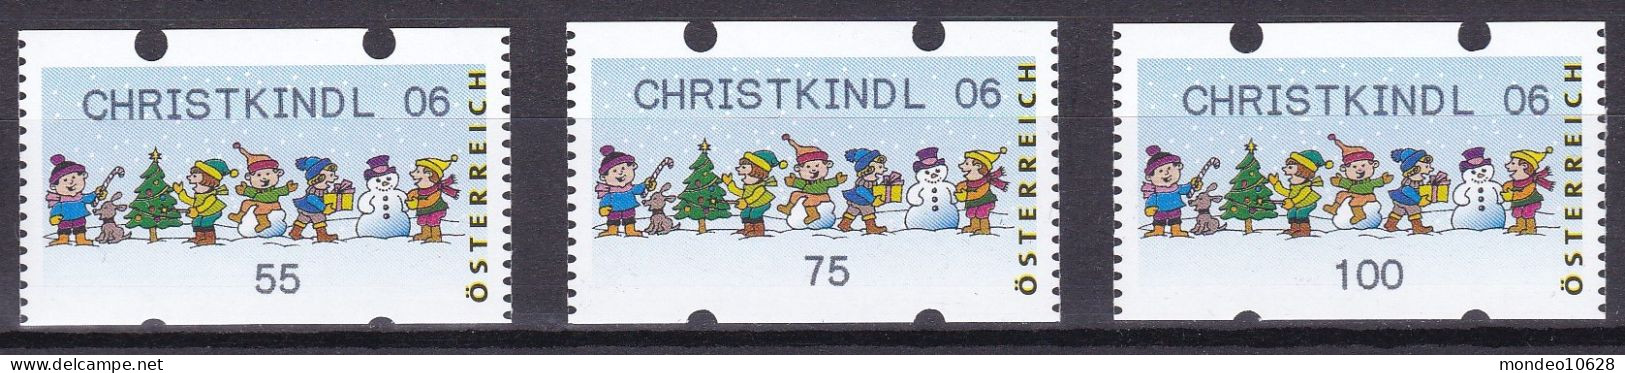 ATM Österreich - Ausgabe 24.11.2006 - Christkindl 06 - Kinder - Mit Zählnummern - Postfrisch (26) - Automatenmarken [ATM]